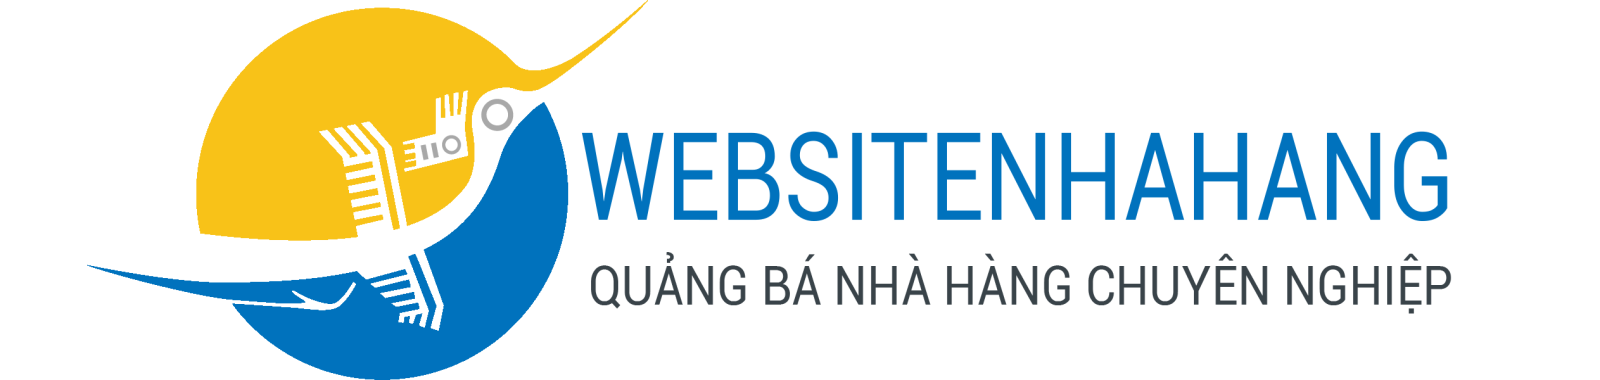 Websitenhahang - Thiết kế website nhà hàng 